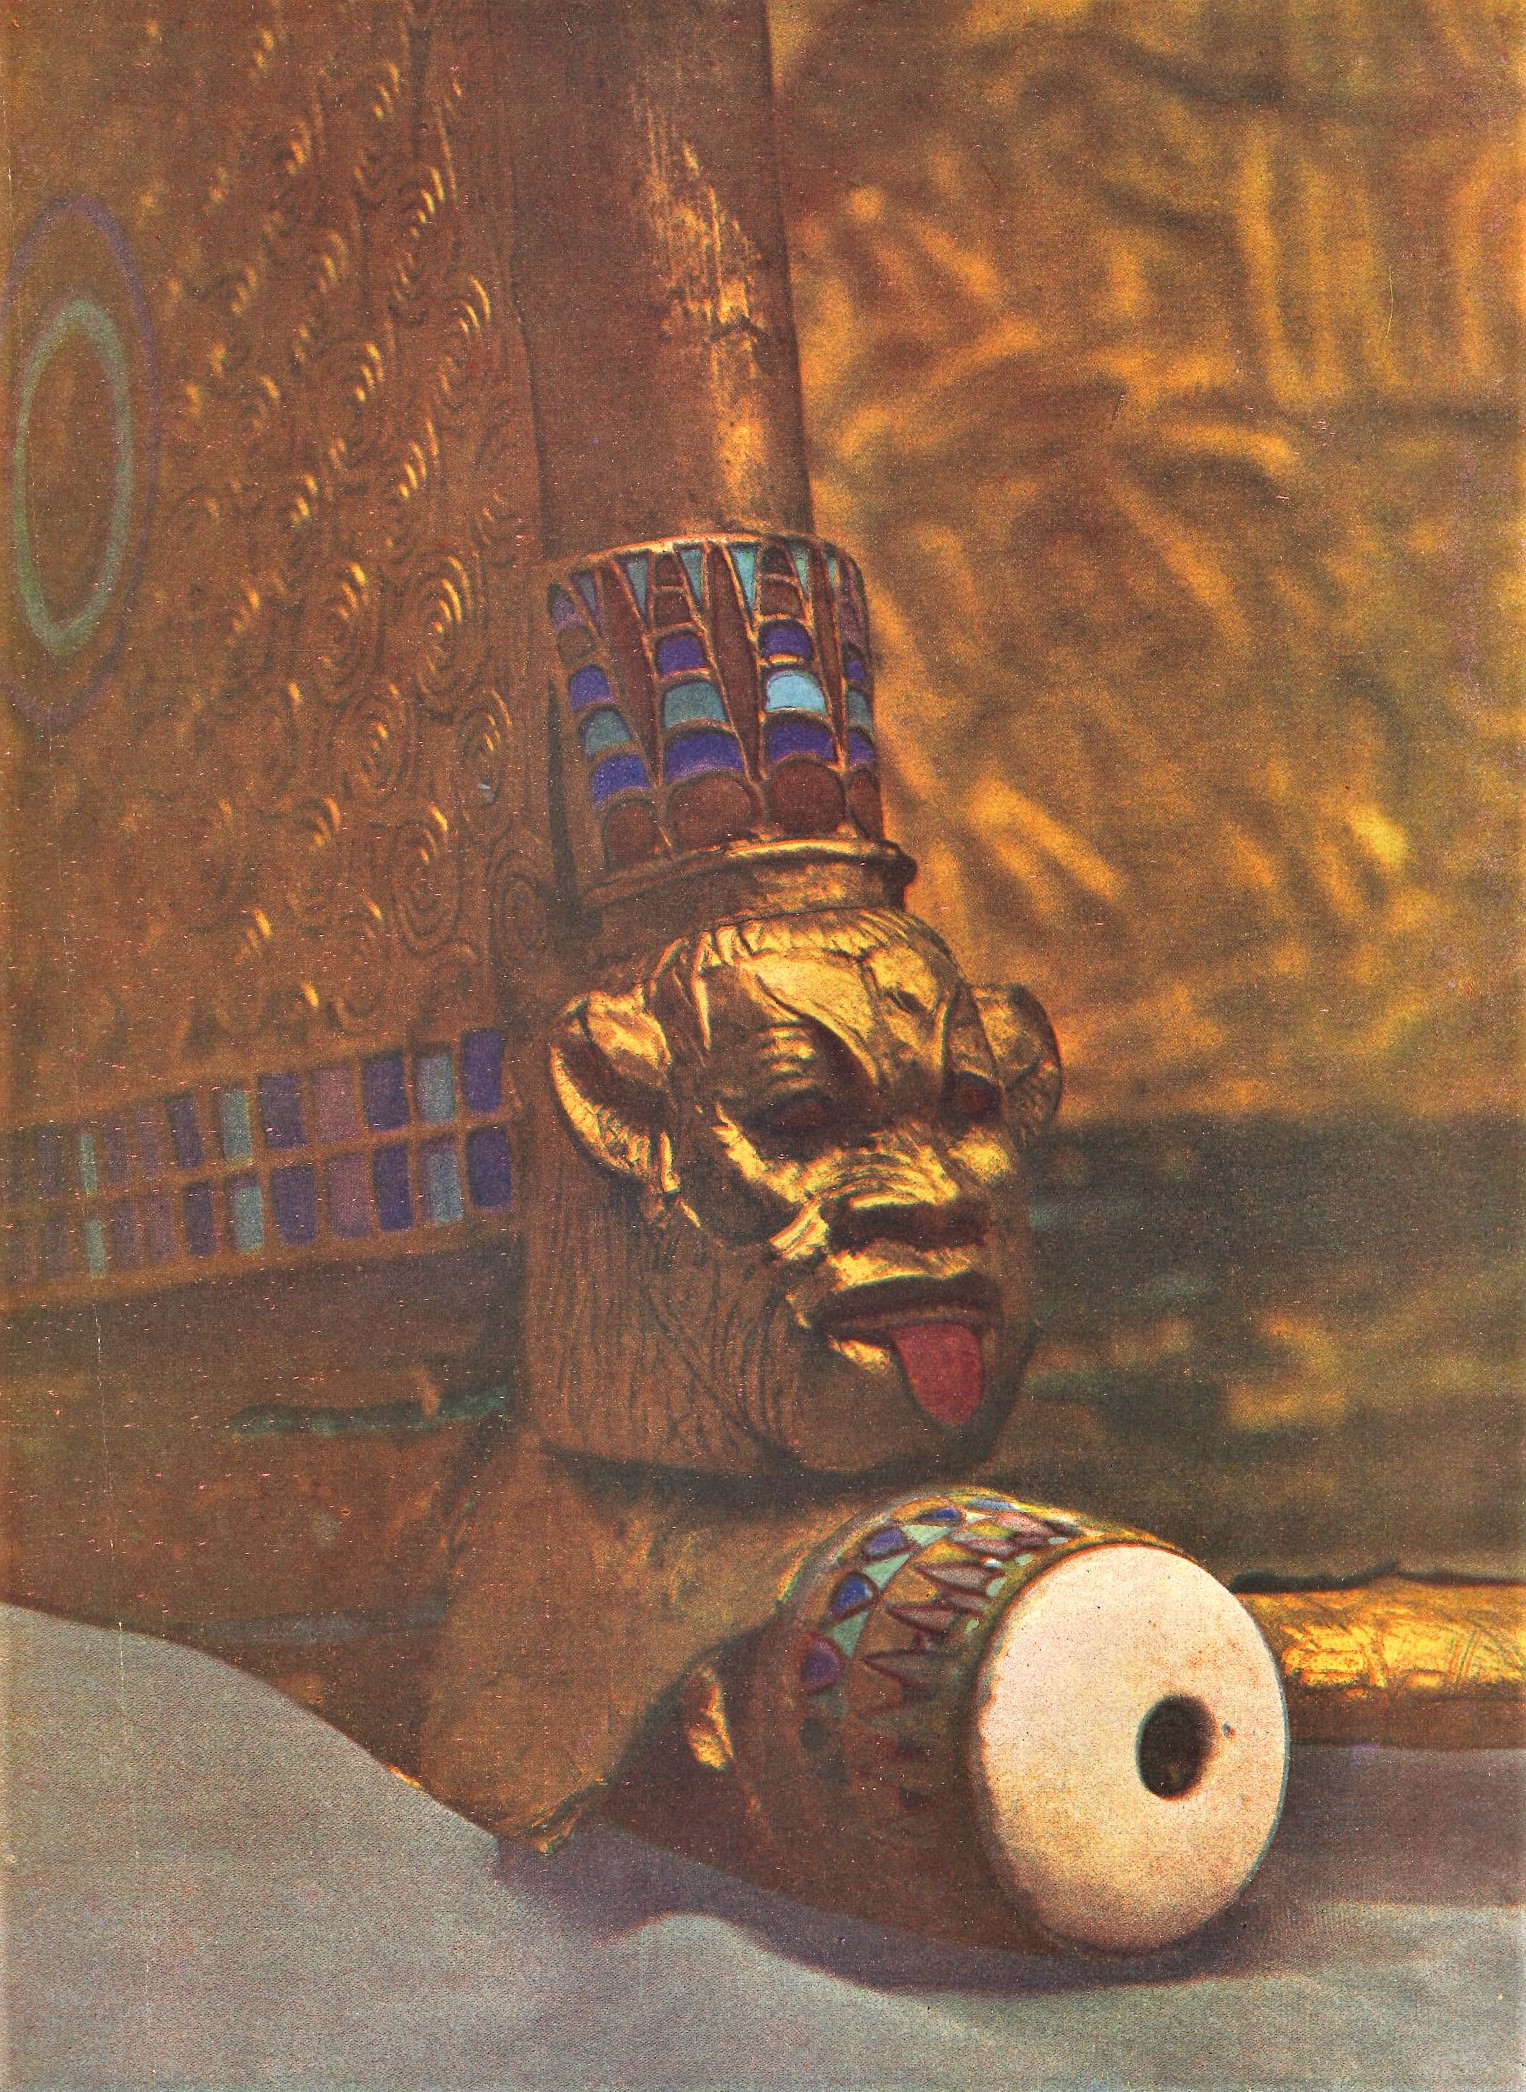 Kopf des Hausgottes Bes an der Staatskarosse des Pharao. Goldschmiedearbeit, gefunden in der Vorkammer des Grabes. Farbfotografie.